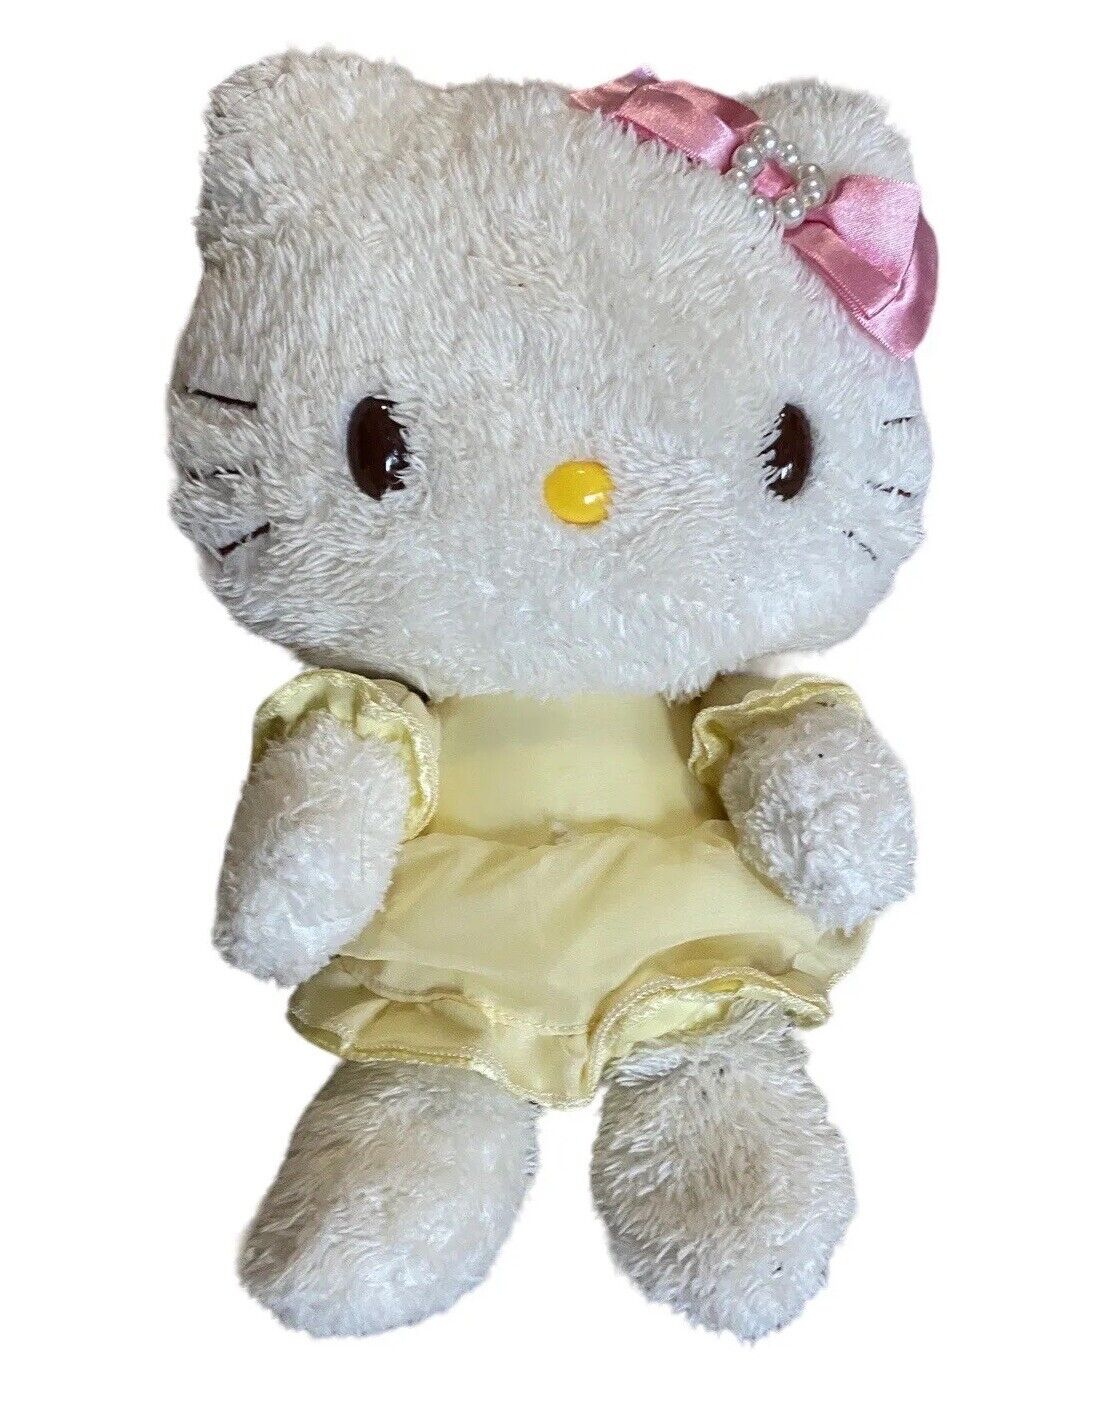 2007 Hello Kitty Plush Sanrio Smiles White Brown Eyes 12” Yellow Dress